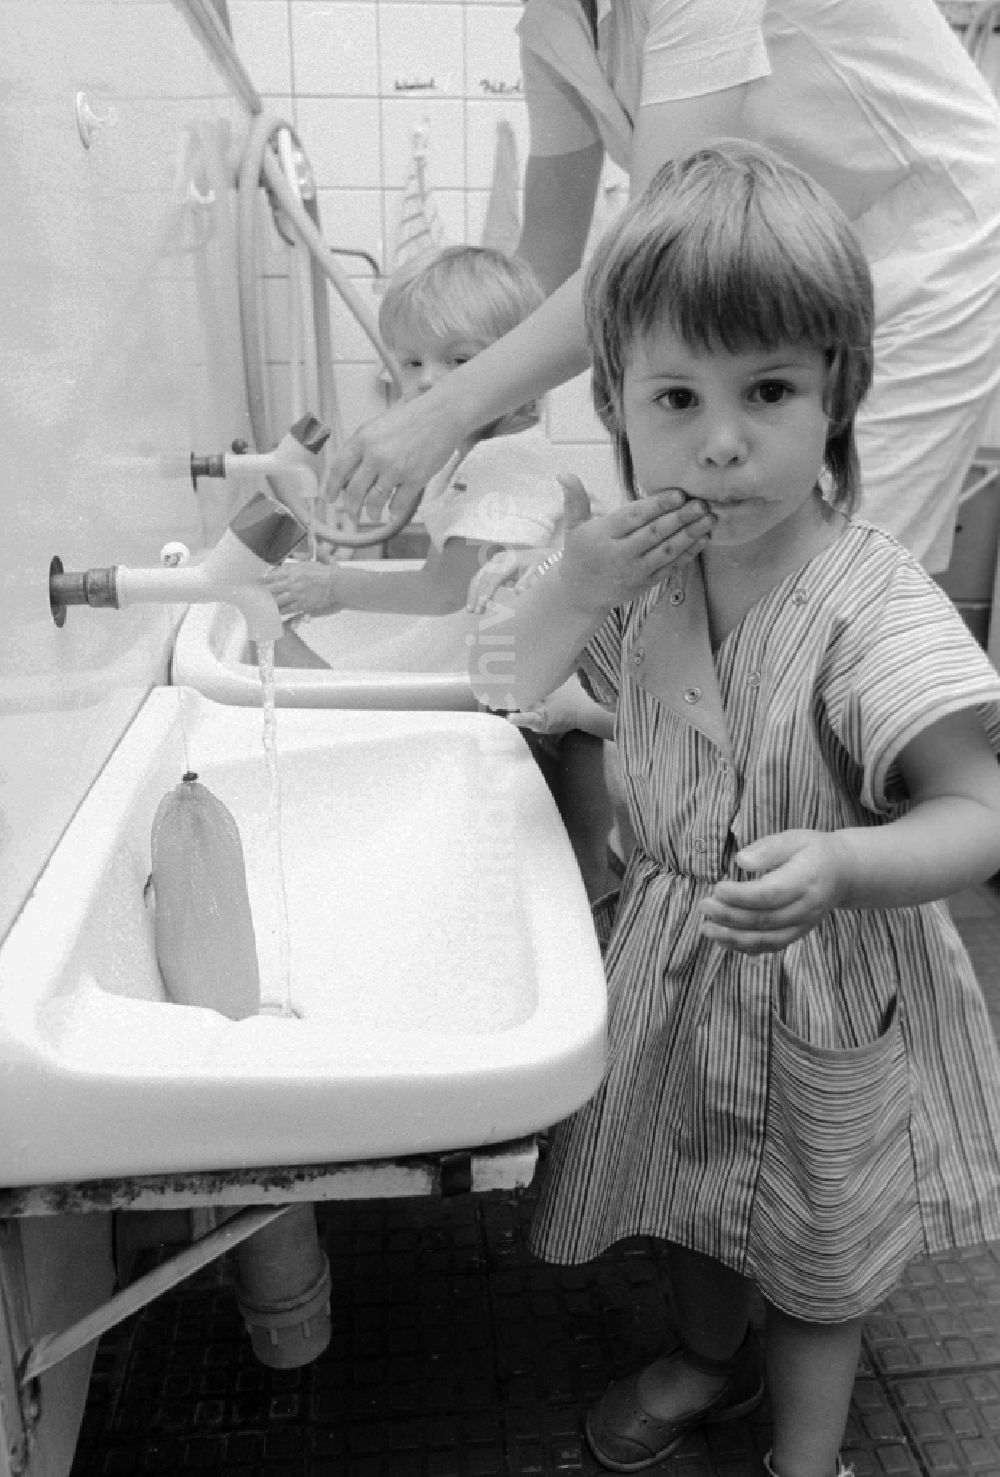 DDR-Fotoarchiv: Berlin - Alltag in einer kombinierten Kindertageseinrichtung in Berlin, der ehemaligen Hauptstadt der DDR, Deutsche Demokratische Republik